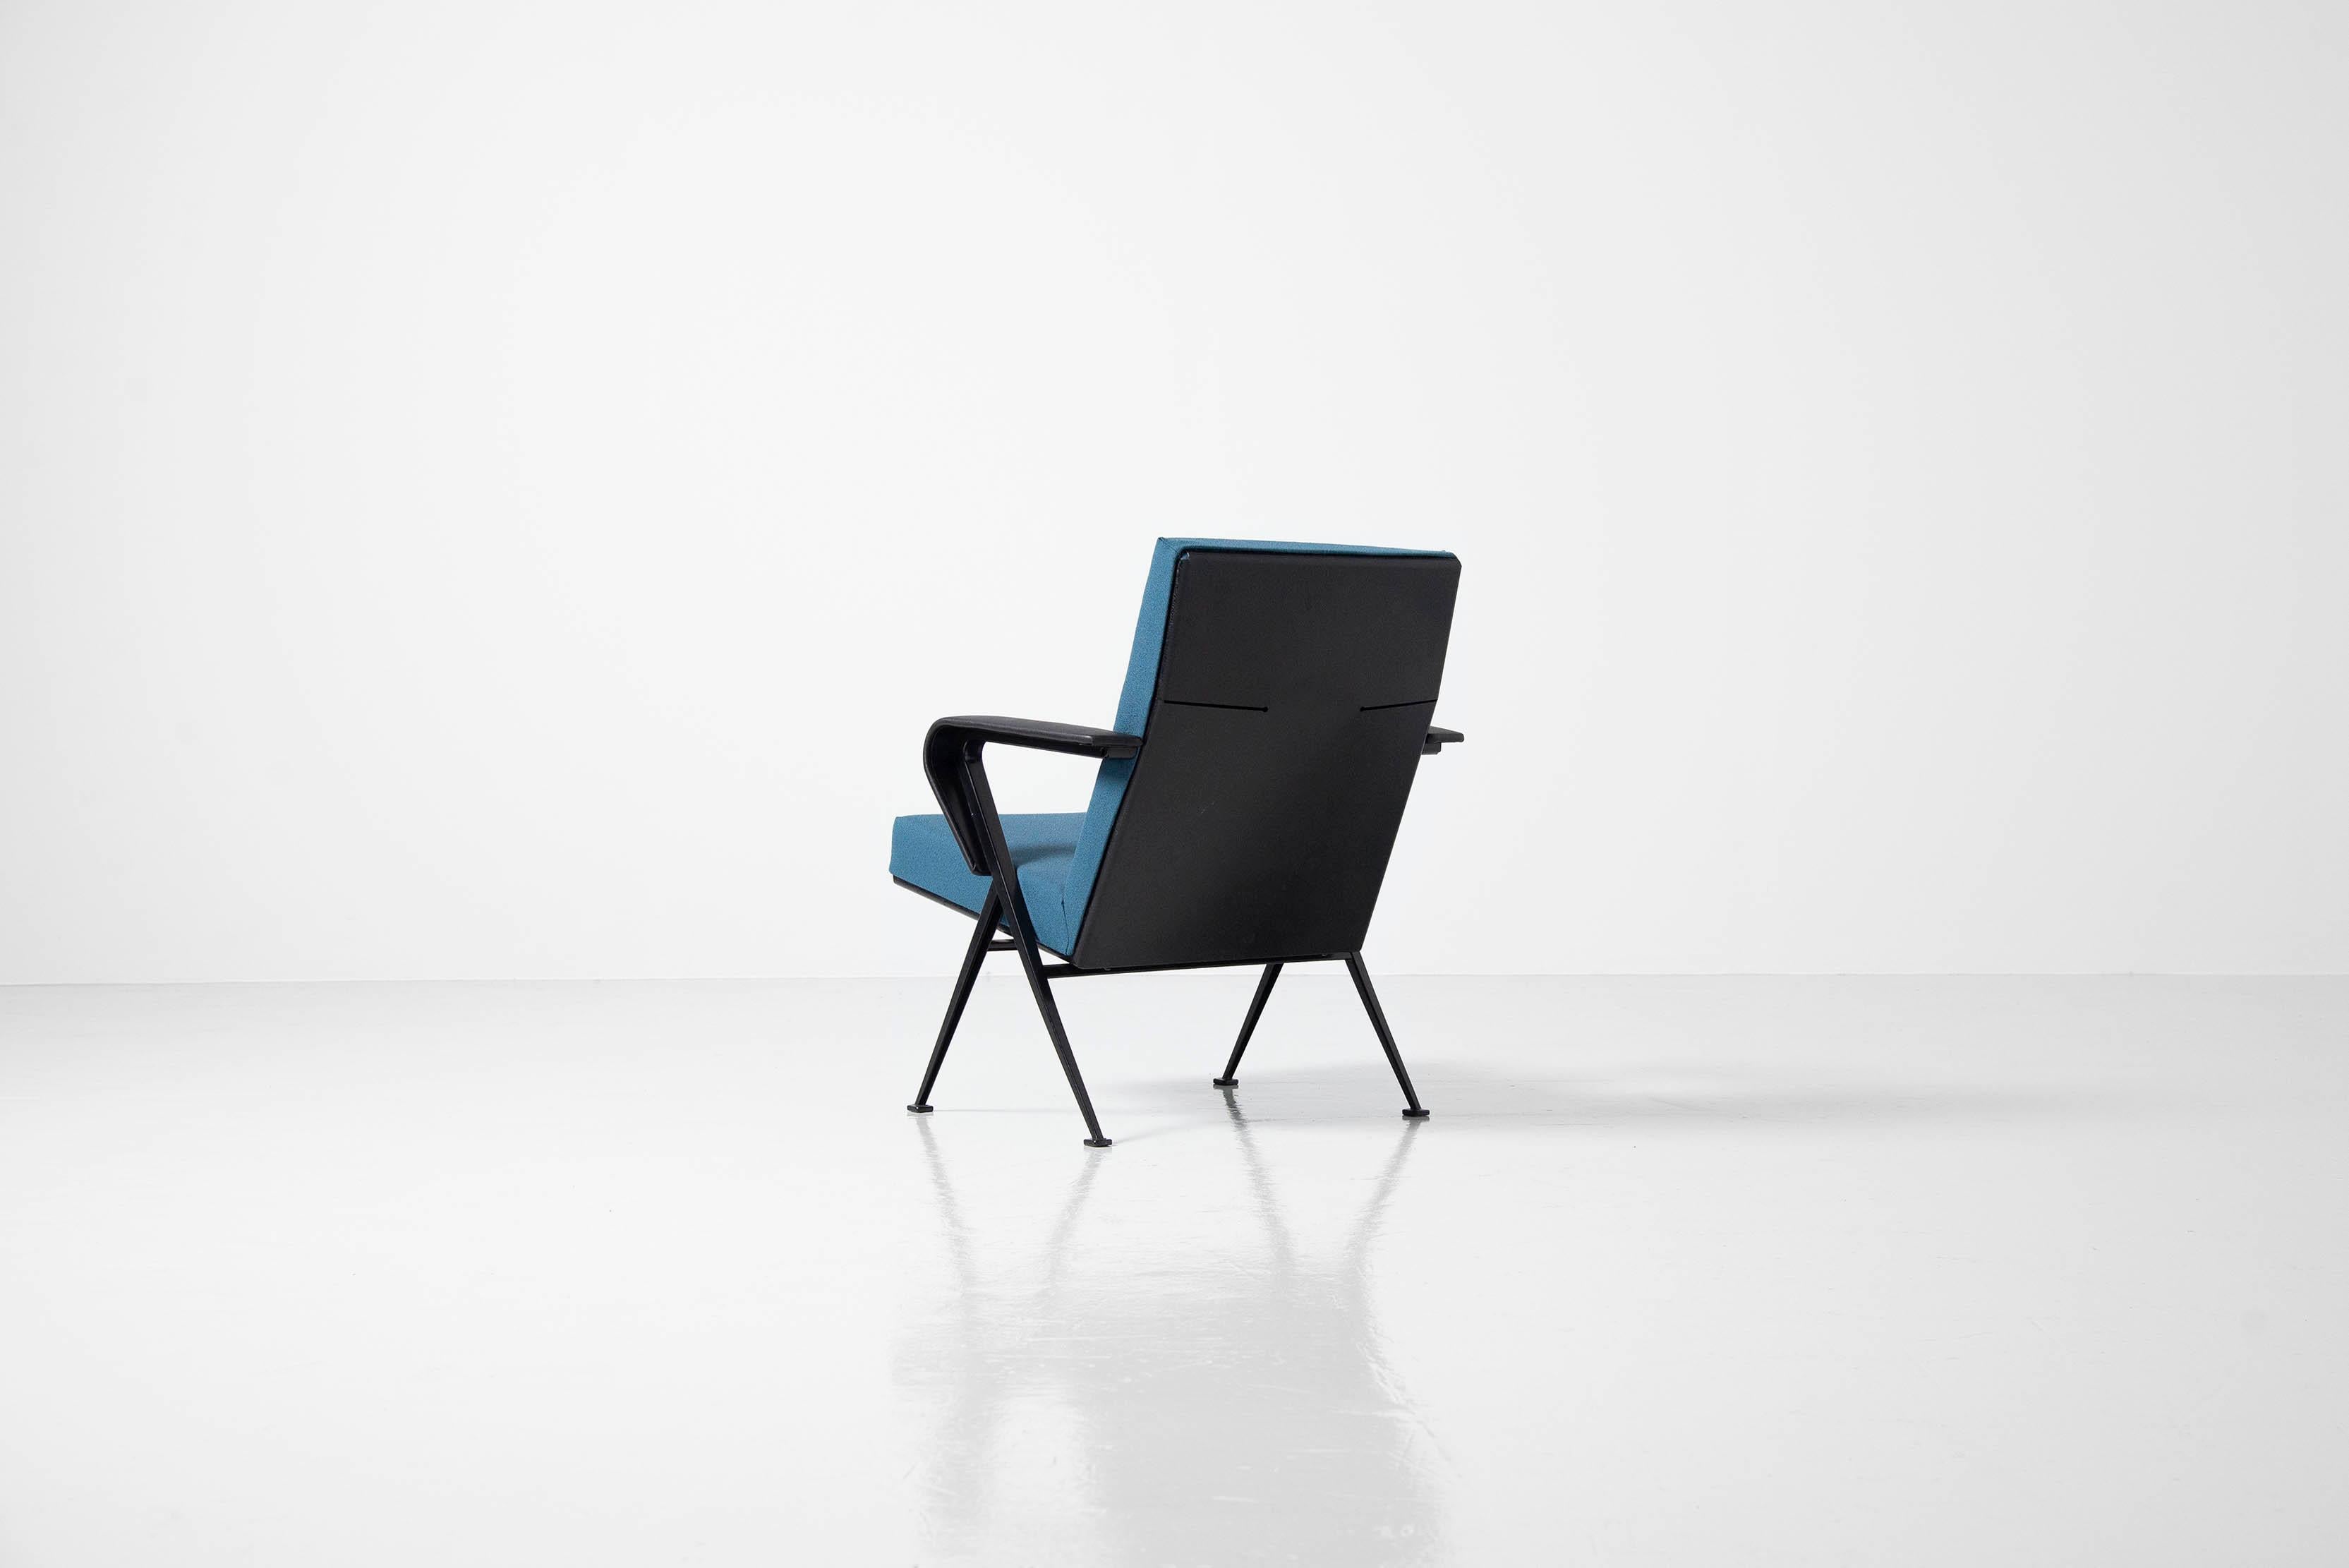 Schöner industrieller Sessel 'Repose', entworfen von Friso Kramer und hergestellt von Ahrend de Cirkel, Holland 1959. Der Stuhl hat ein sehr schönes zirkelförmiges Gestell mit Metallstruktur, sehr ähnlich dem Design des Visiteur-Stuhls von Jean